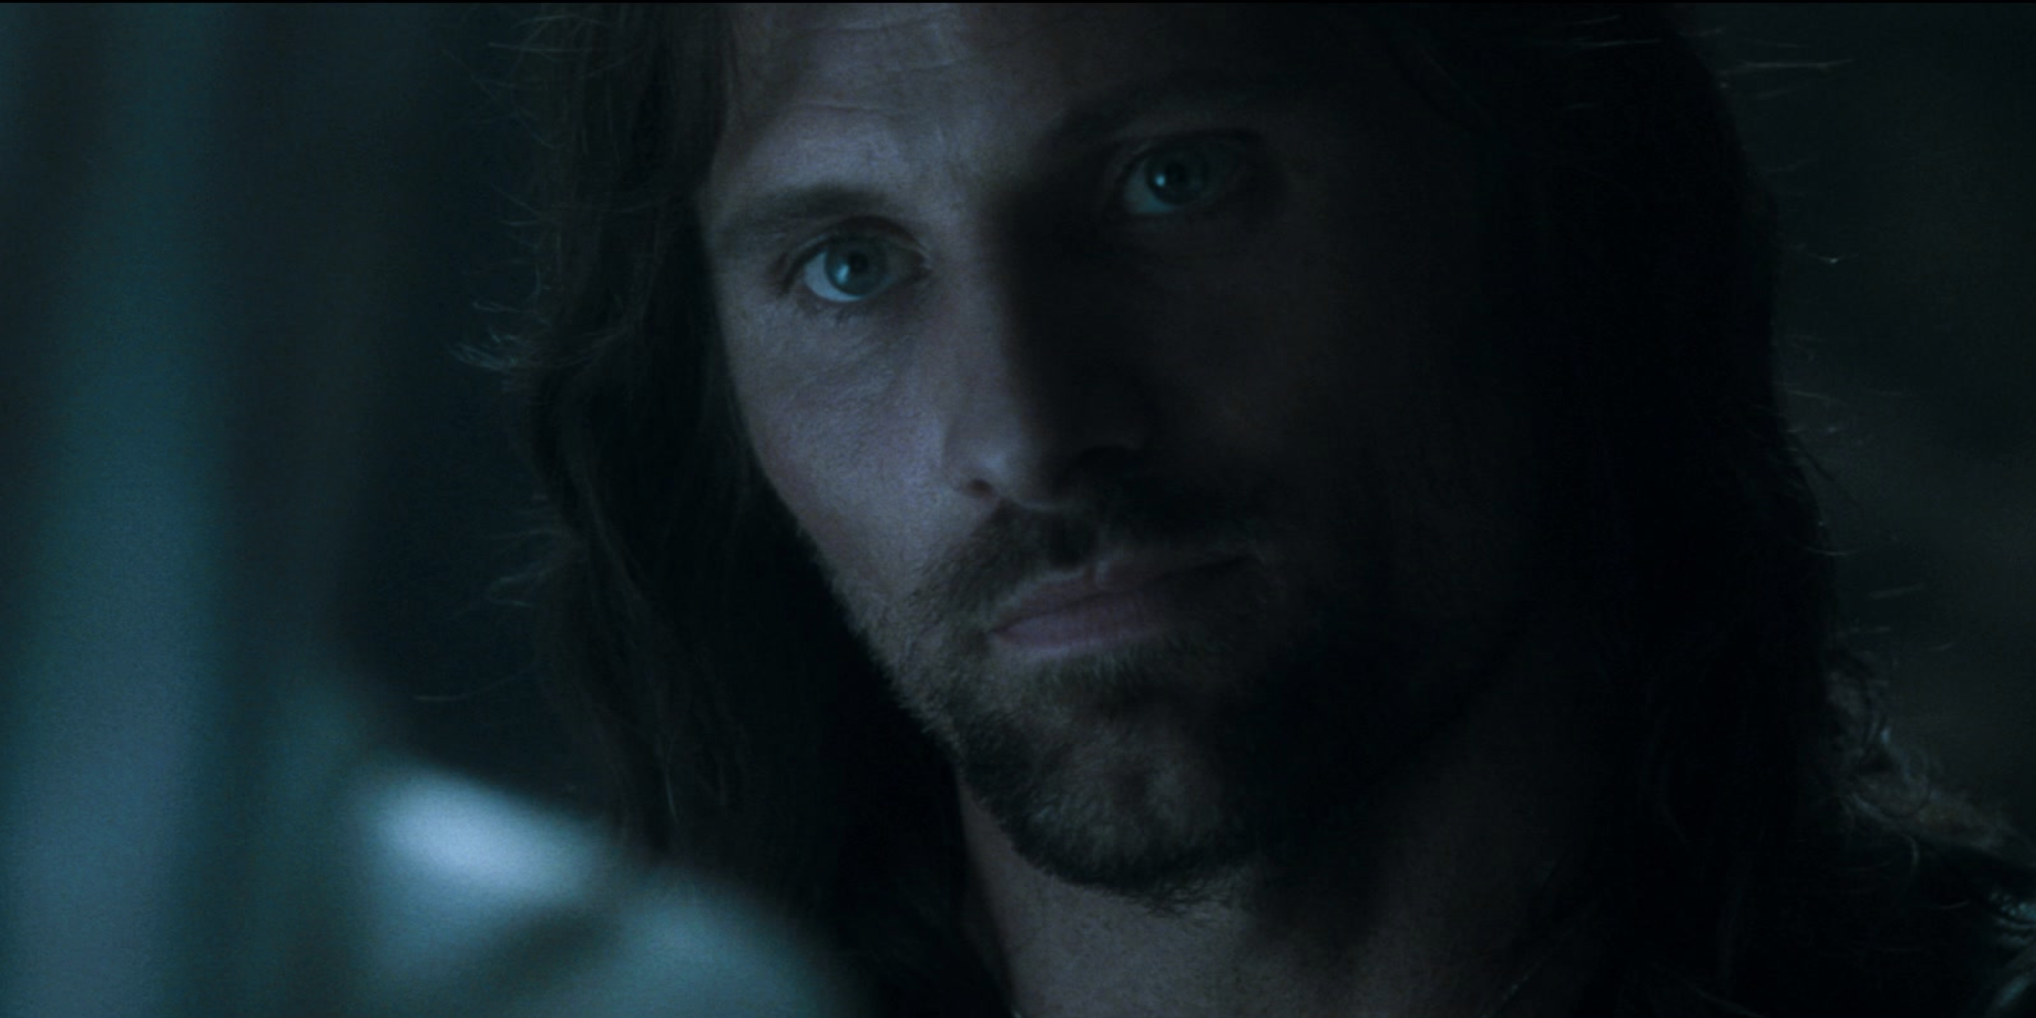 A close-up of Aragorn in dim light